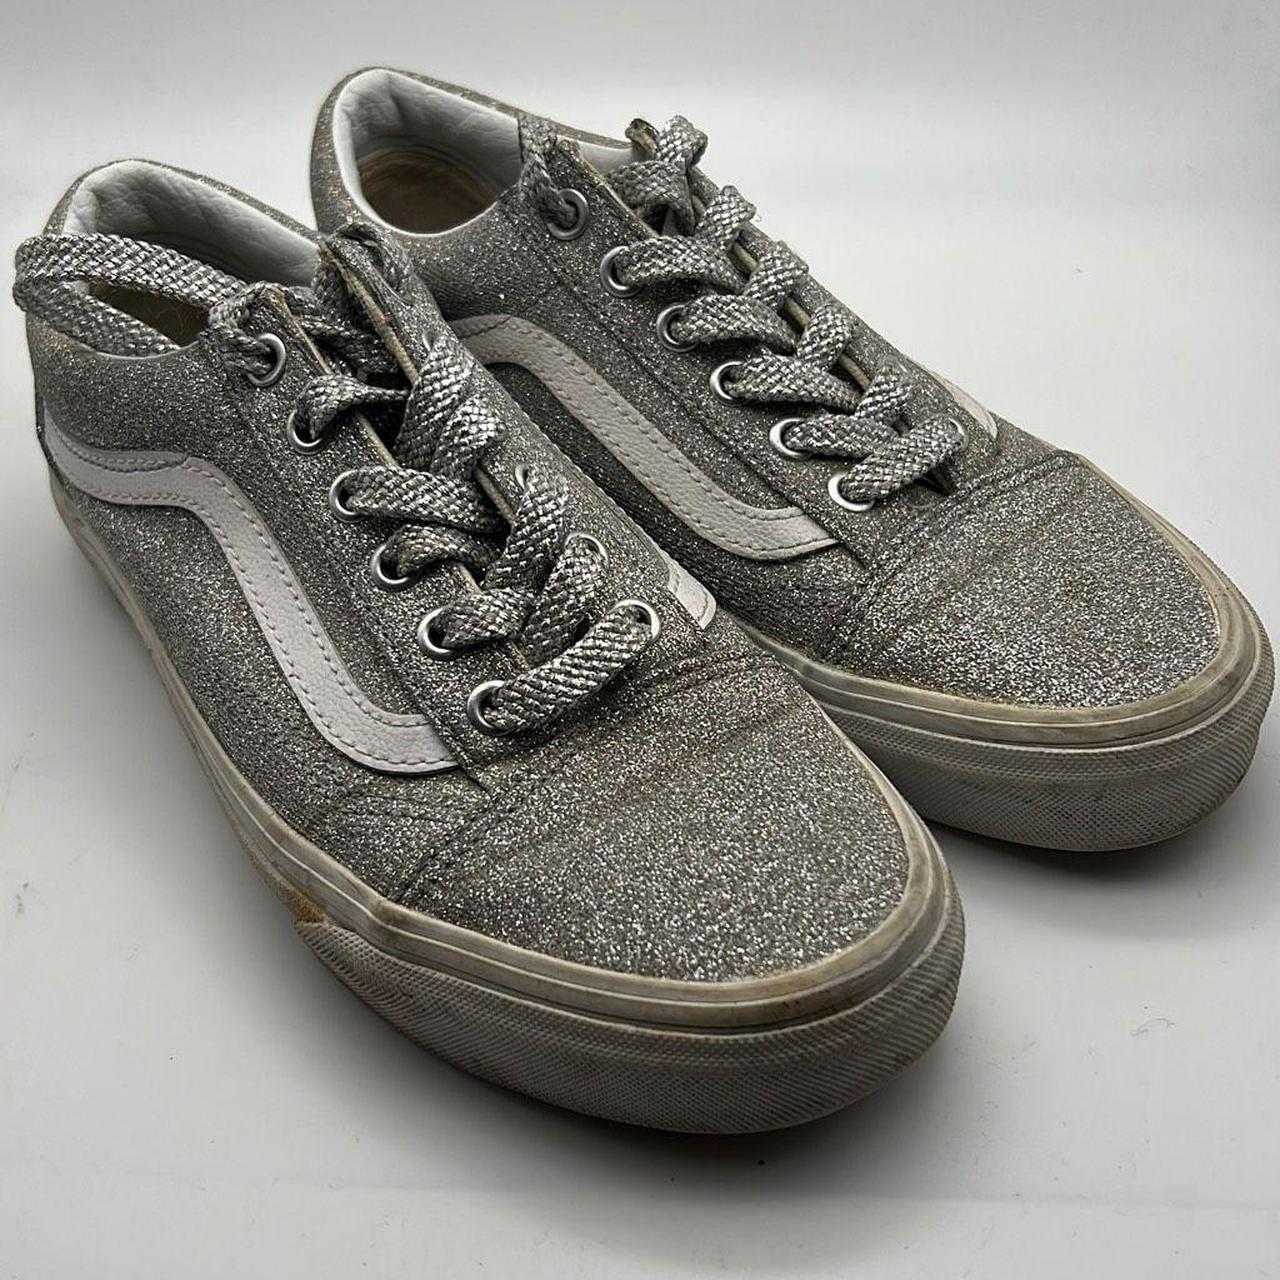 VANS Old Skool Glitter white shoes for women